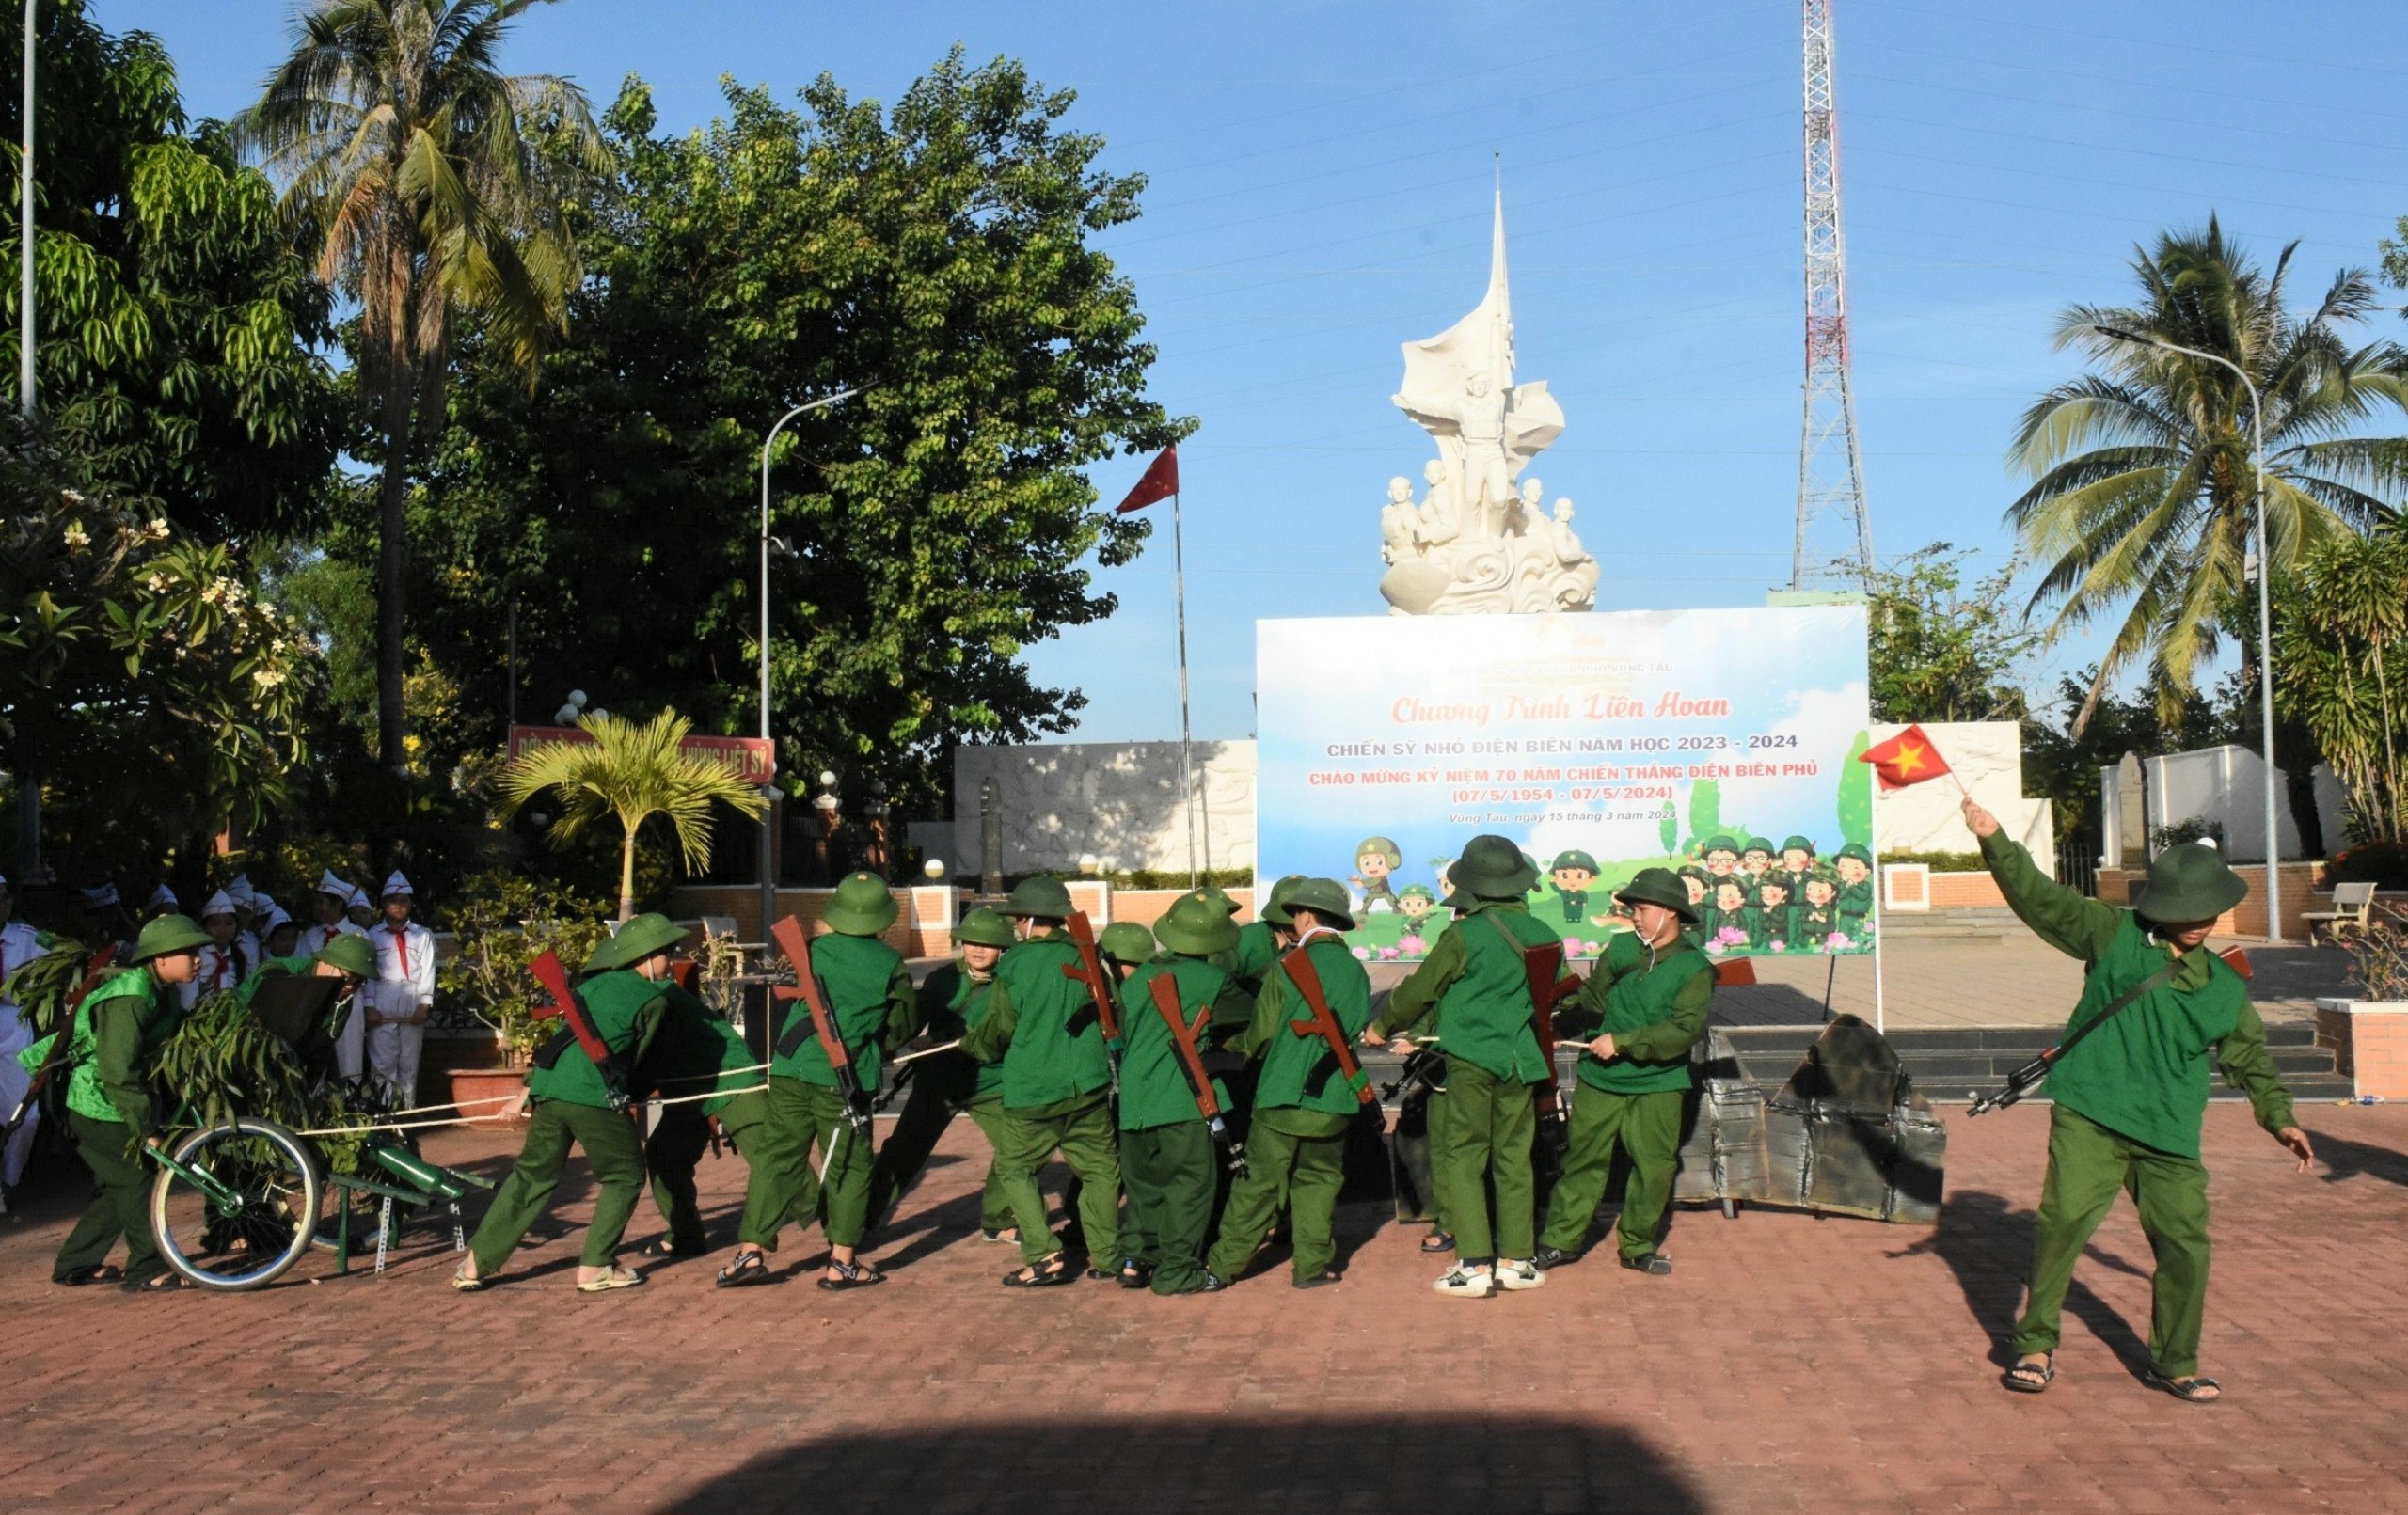 Một tiết mục văn nghệ tái hiện cảnh bộ đội Việt Nam kéo pháo lên Điện Biên Phủ được thiếu nhi biểu diễn tại liên hoan.